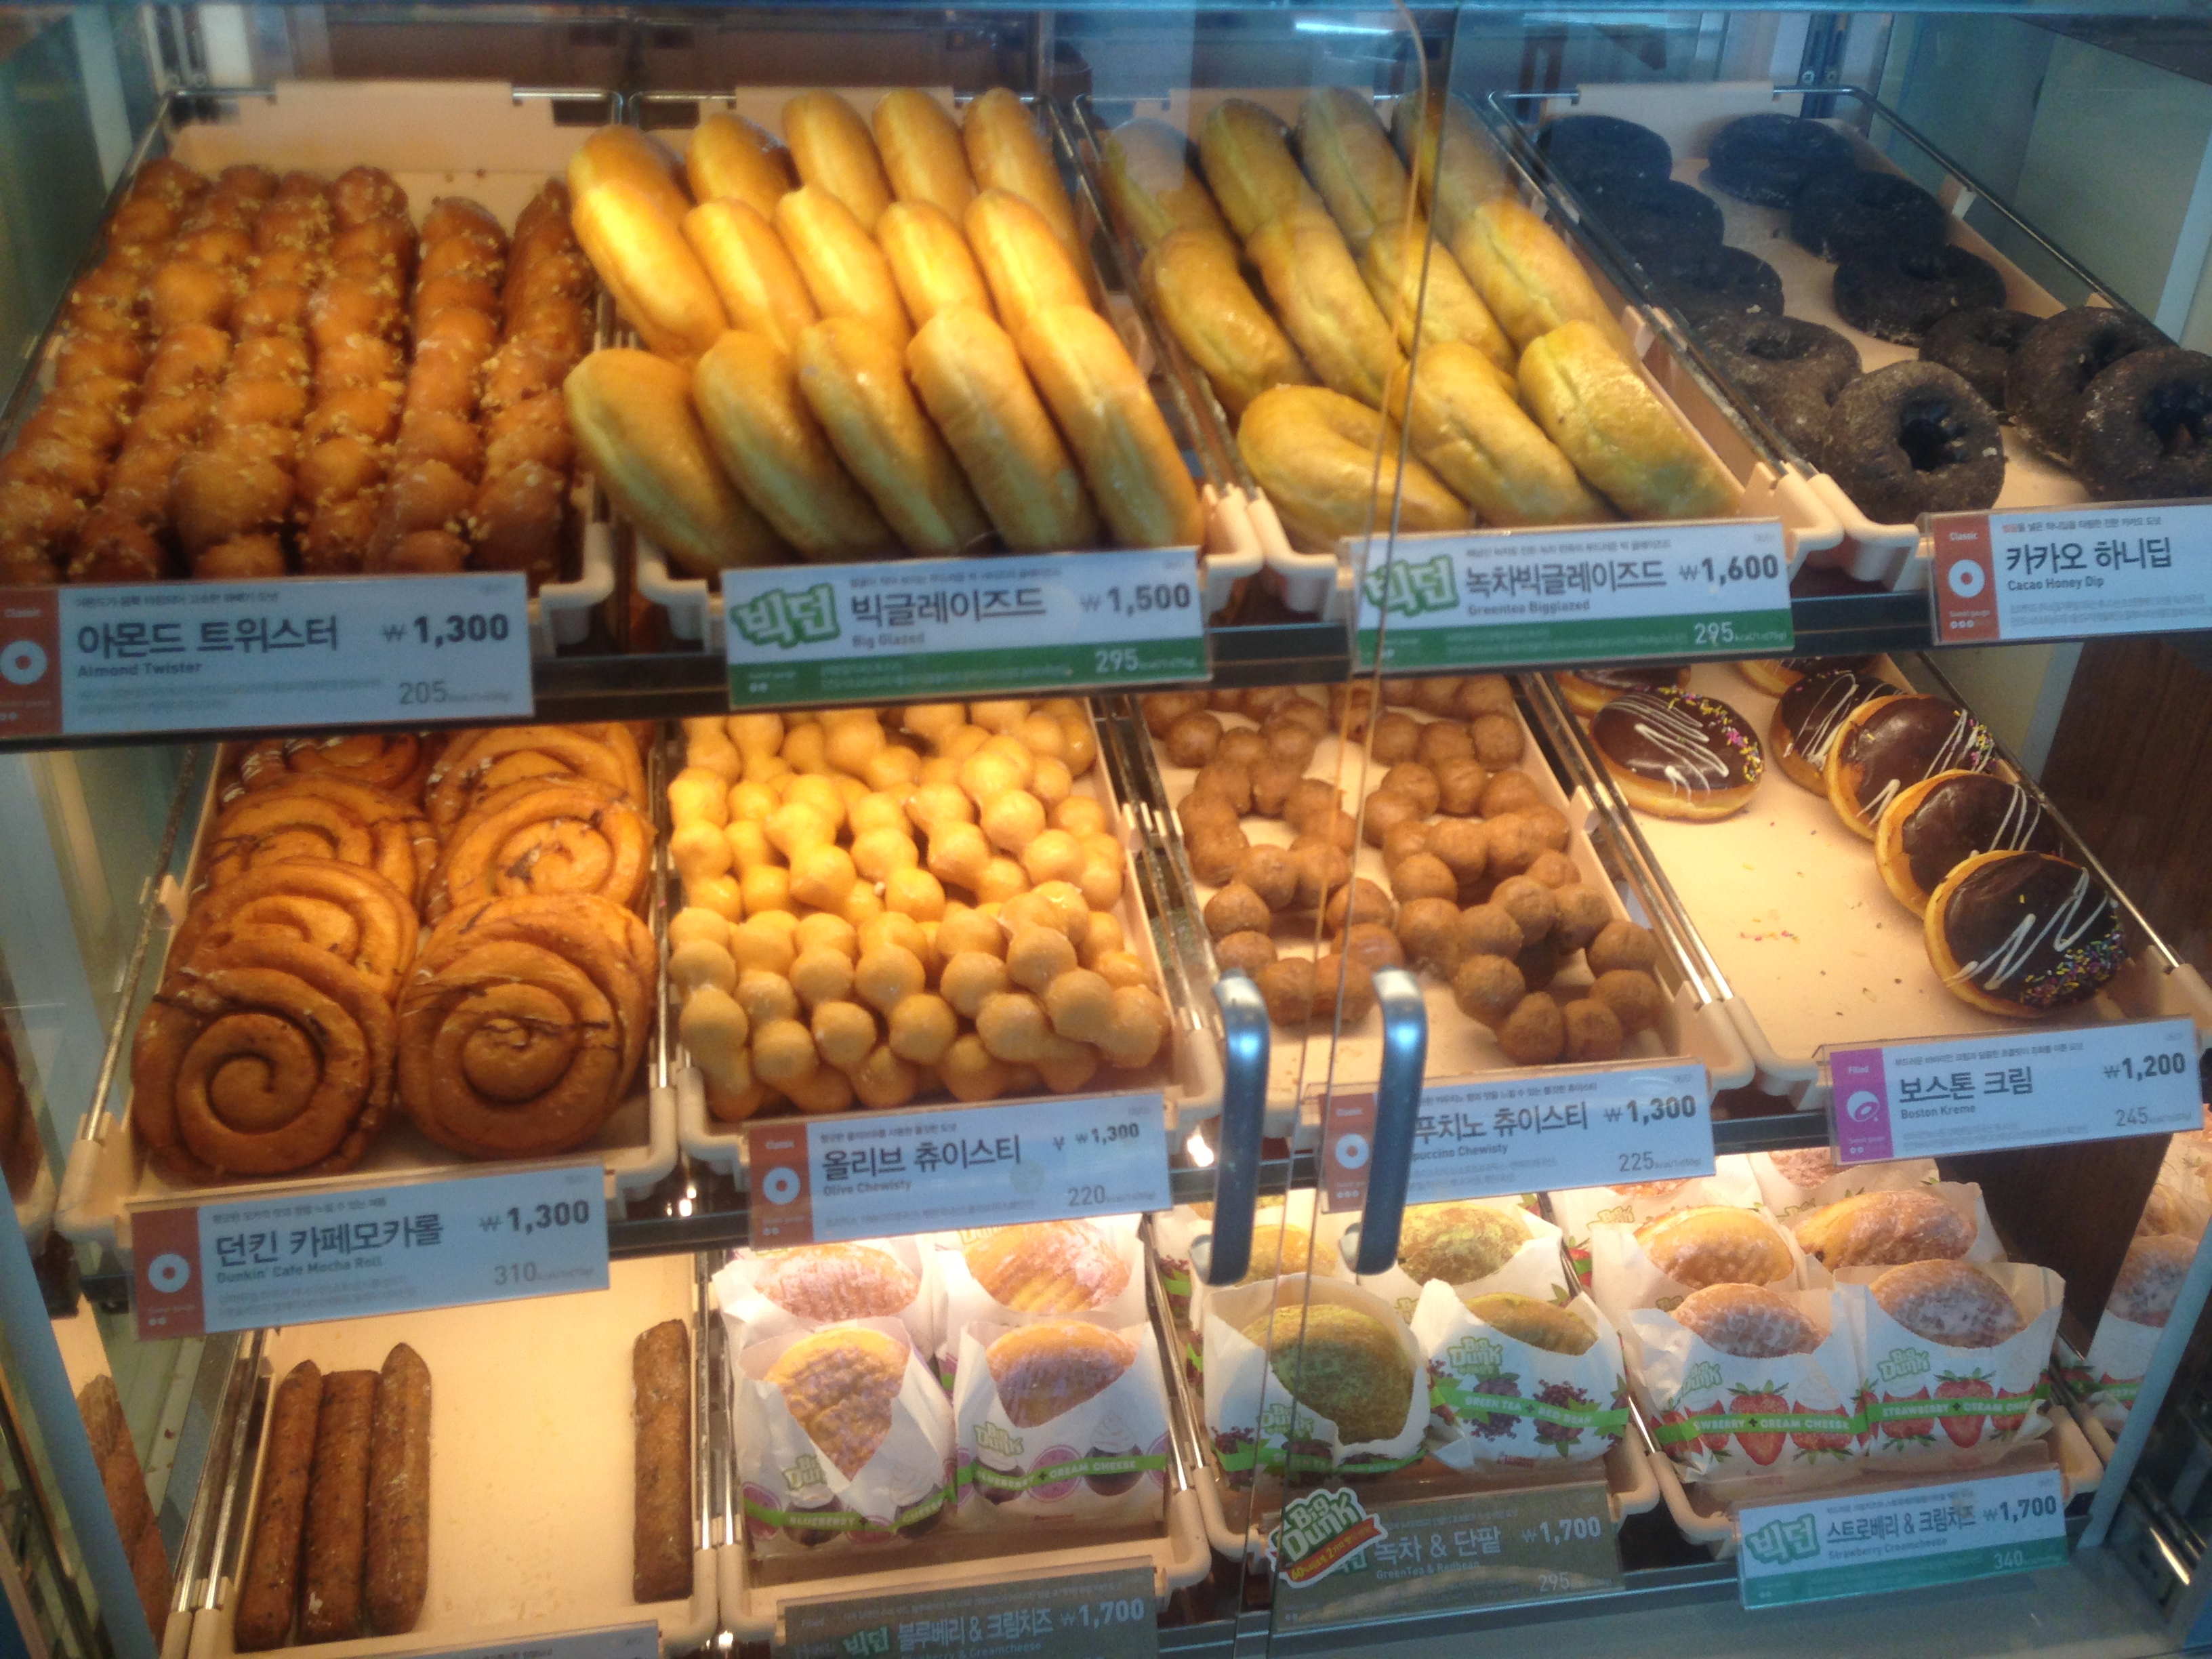 釜山机场的面包店~最爱吃各种面包蛋糕